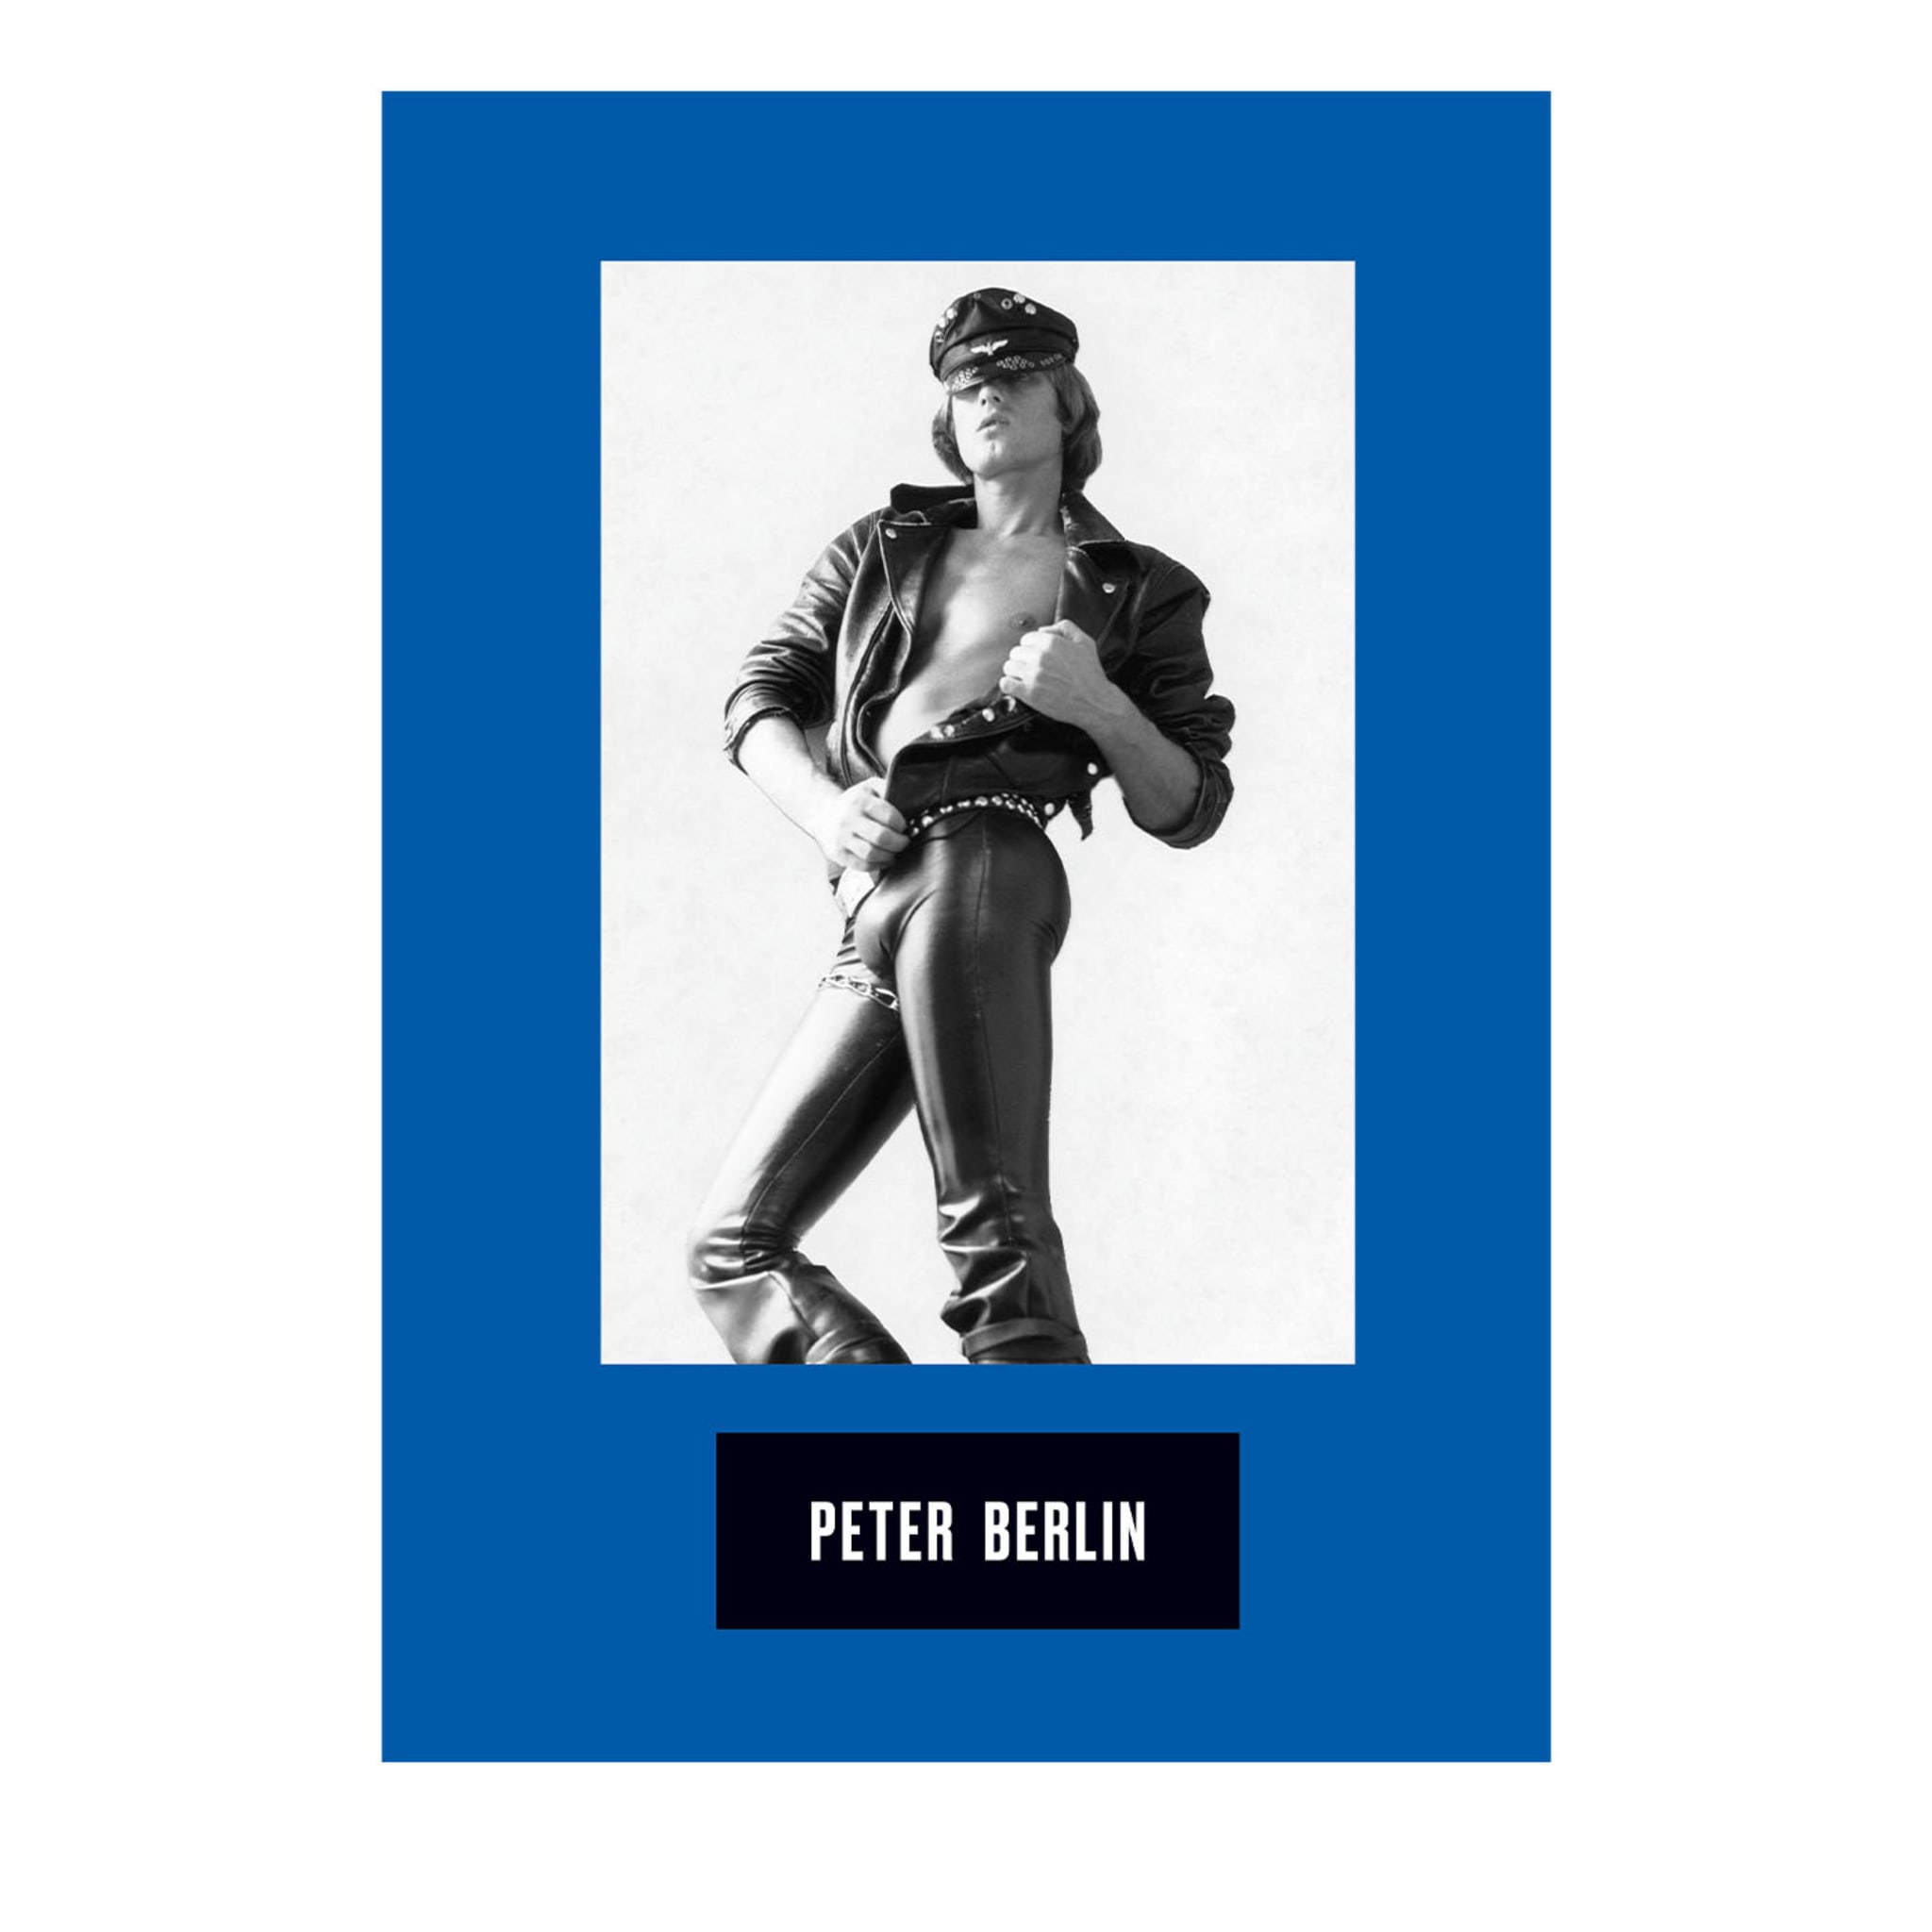 Ikone, Künstler, Fotosexueller Sammlerausgabe von Peter Berlin - Hauptansicht